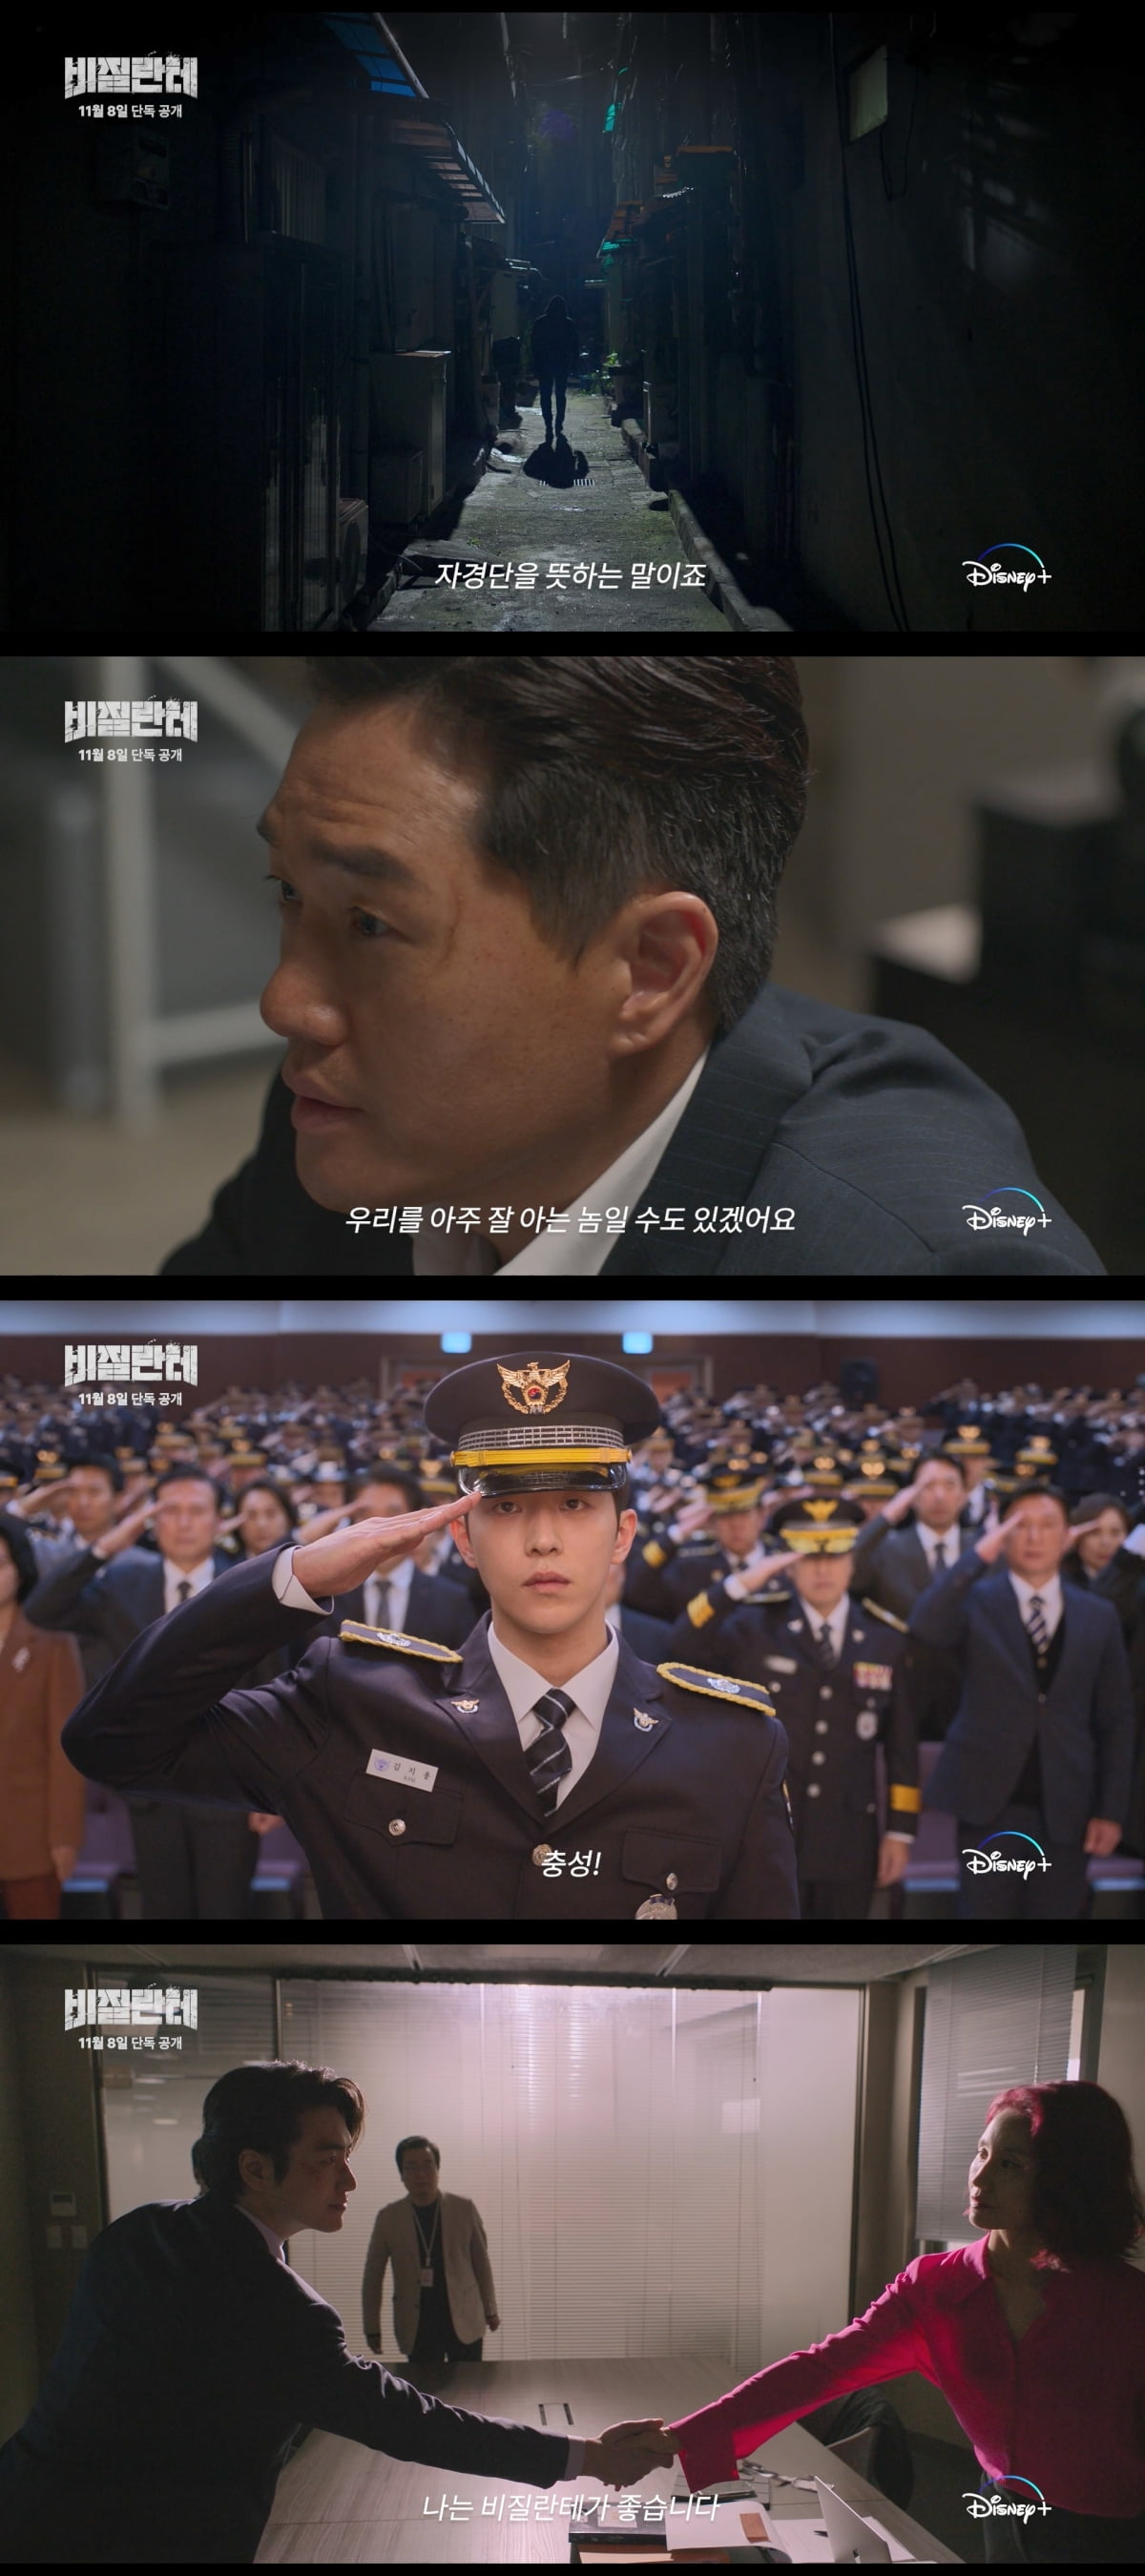 Two-faced Nam Joo-hyuk, catharsis